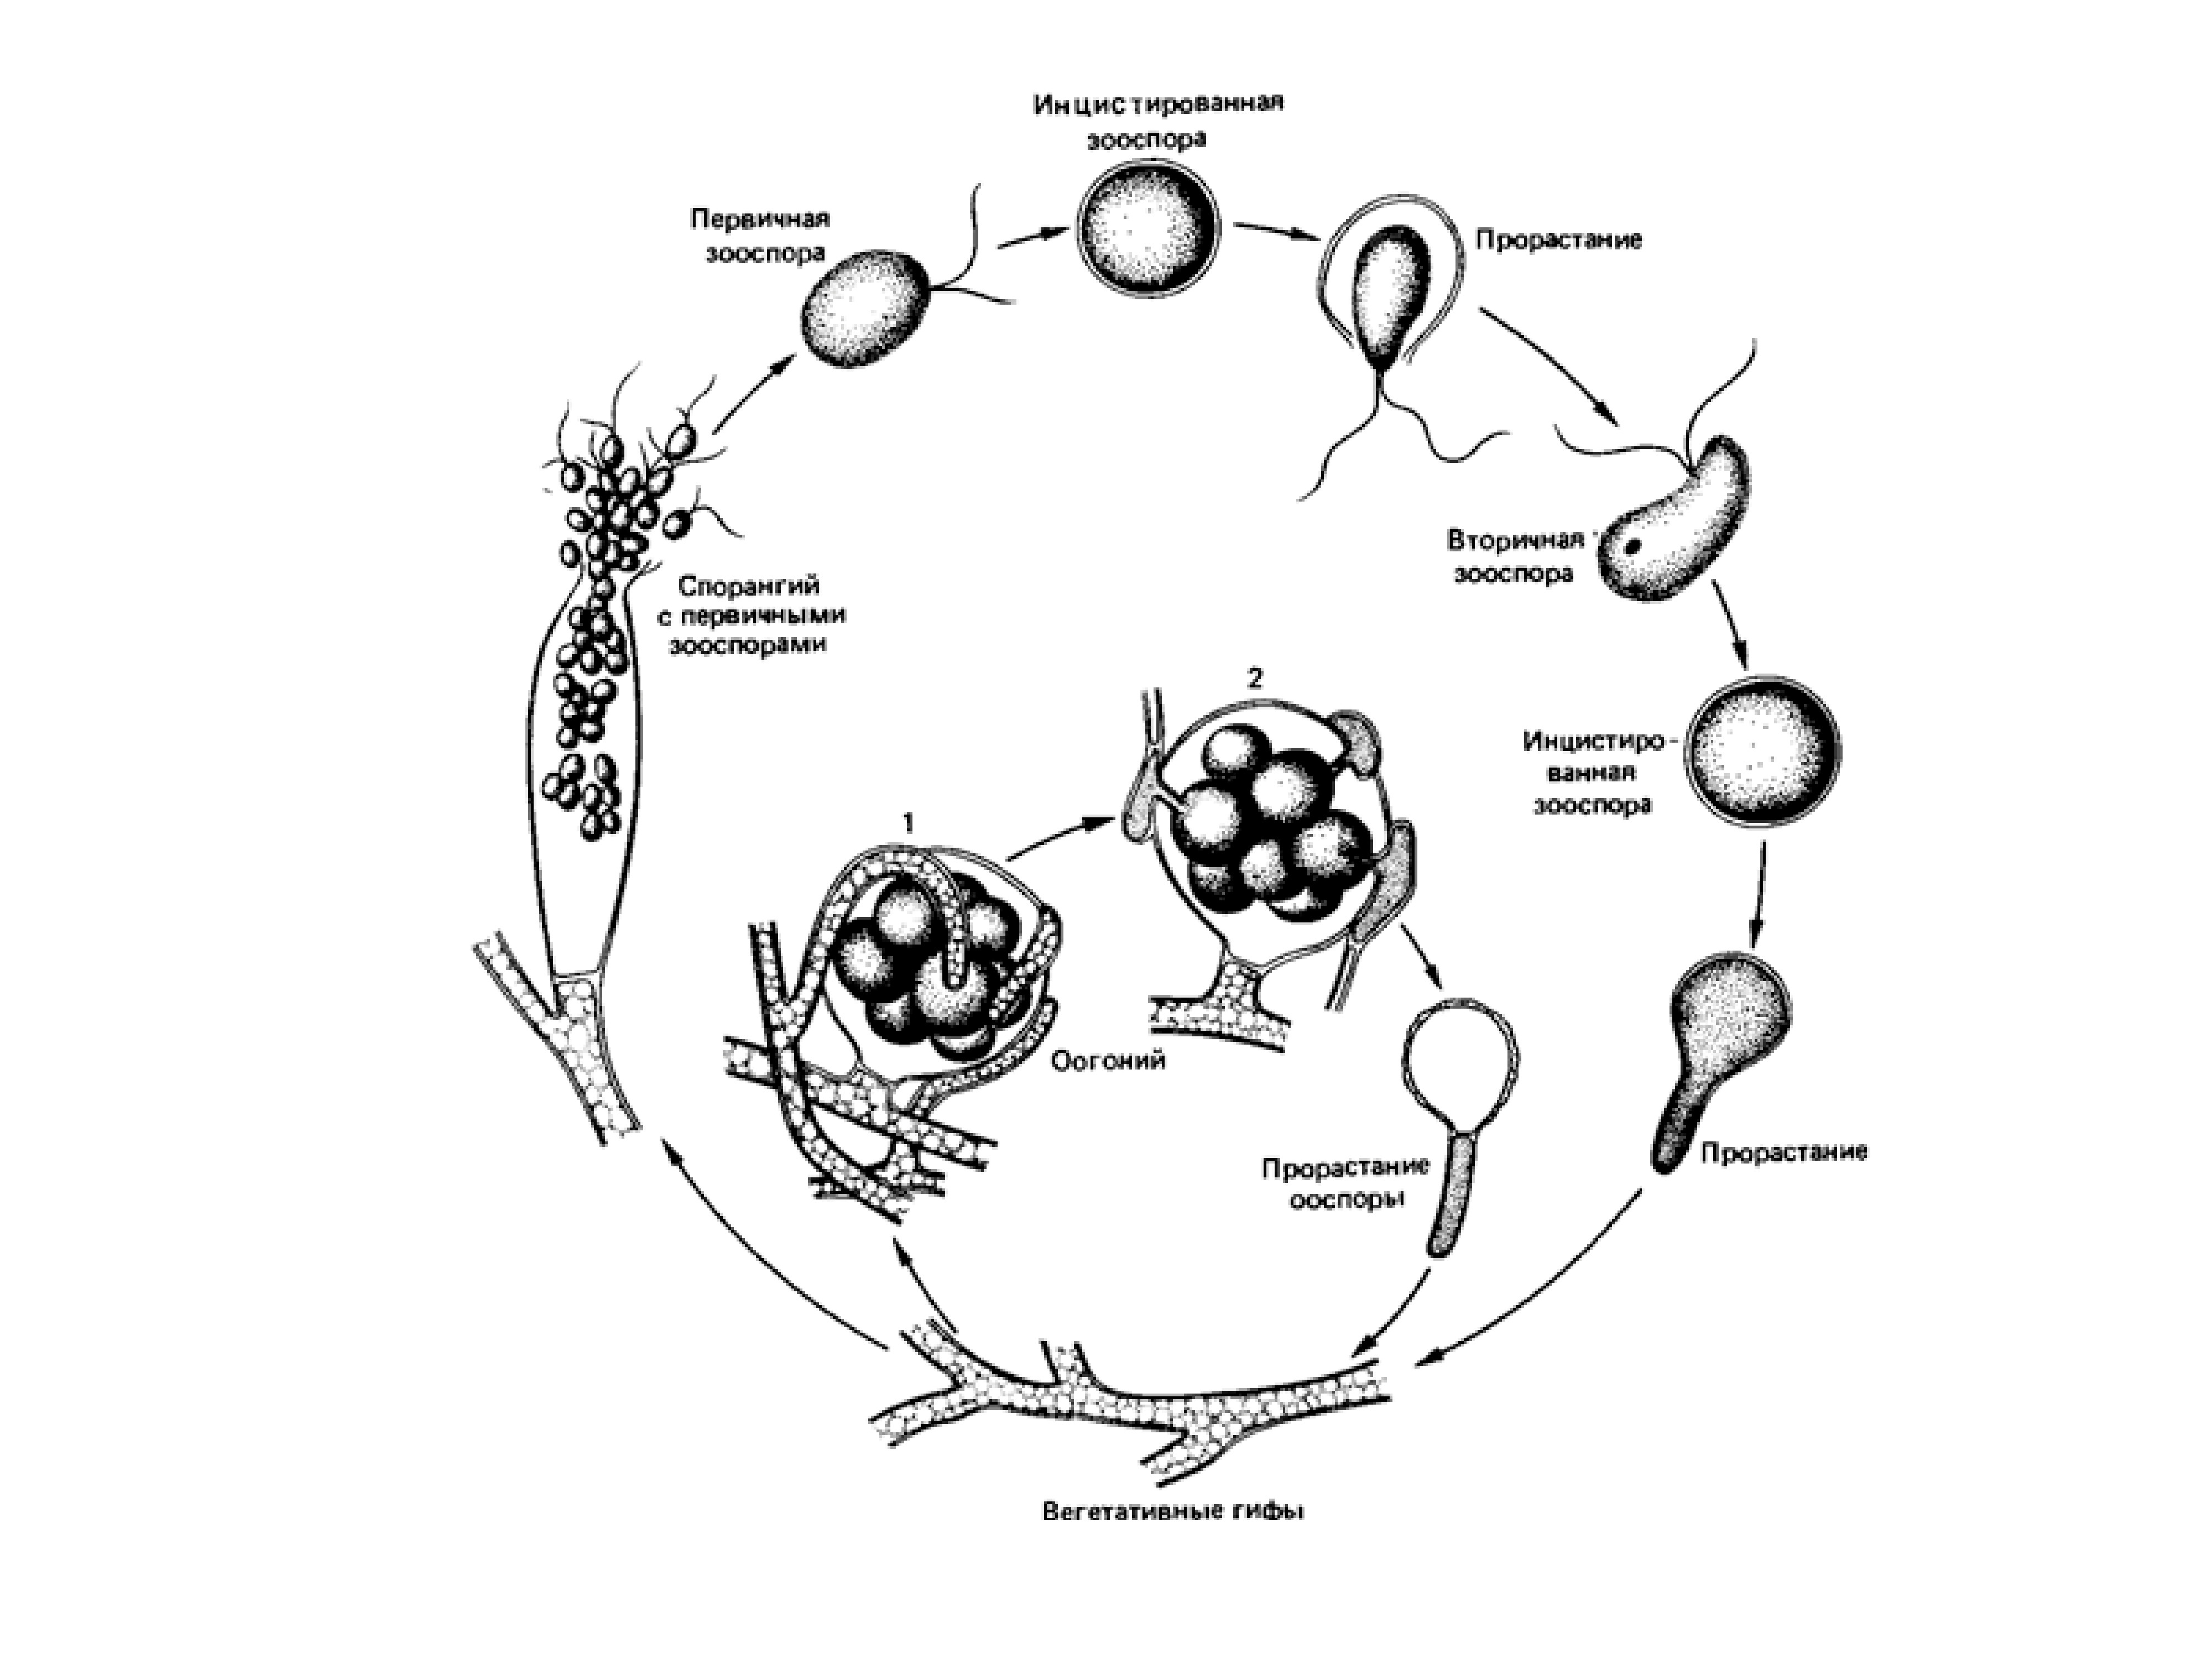 Стадии жизненного цикла цисты. Цикл развития сапролегнии. Жизненный цикл Saprolegnia. Схема жизненного цикла сапролегнии. Жизненный цикл хитридиомицетов.